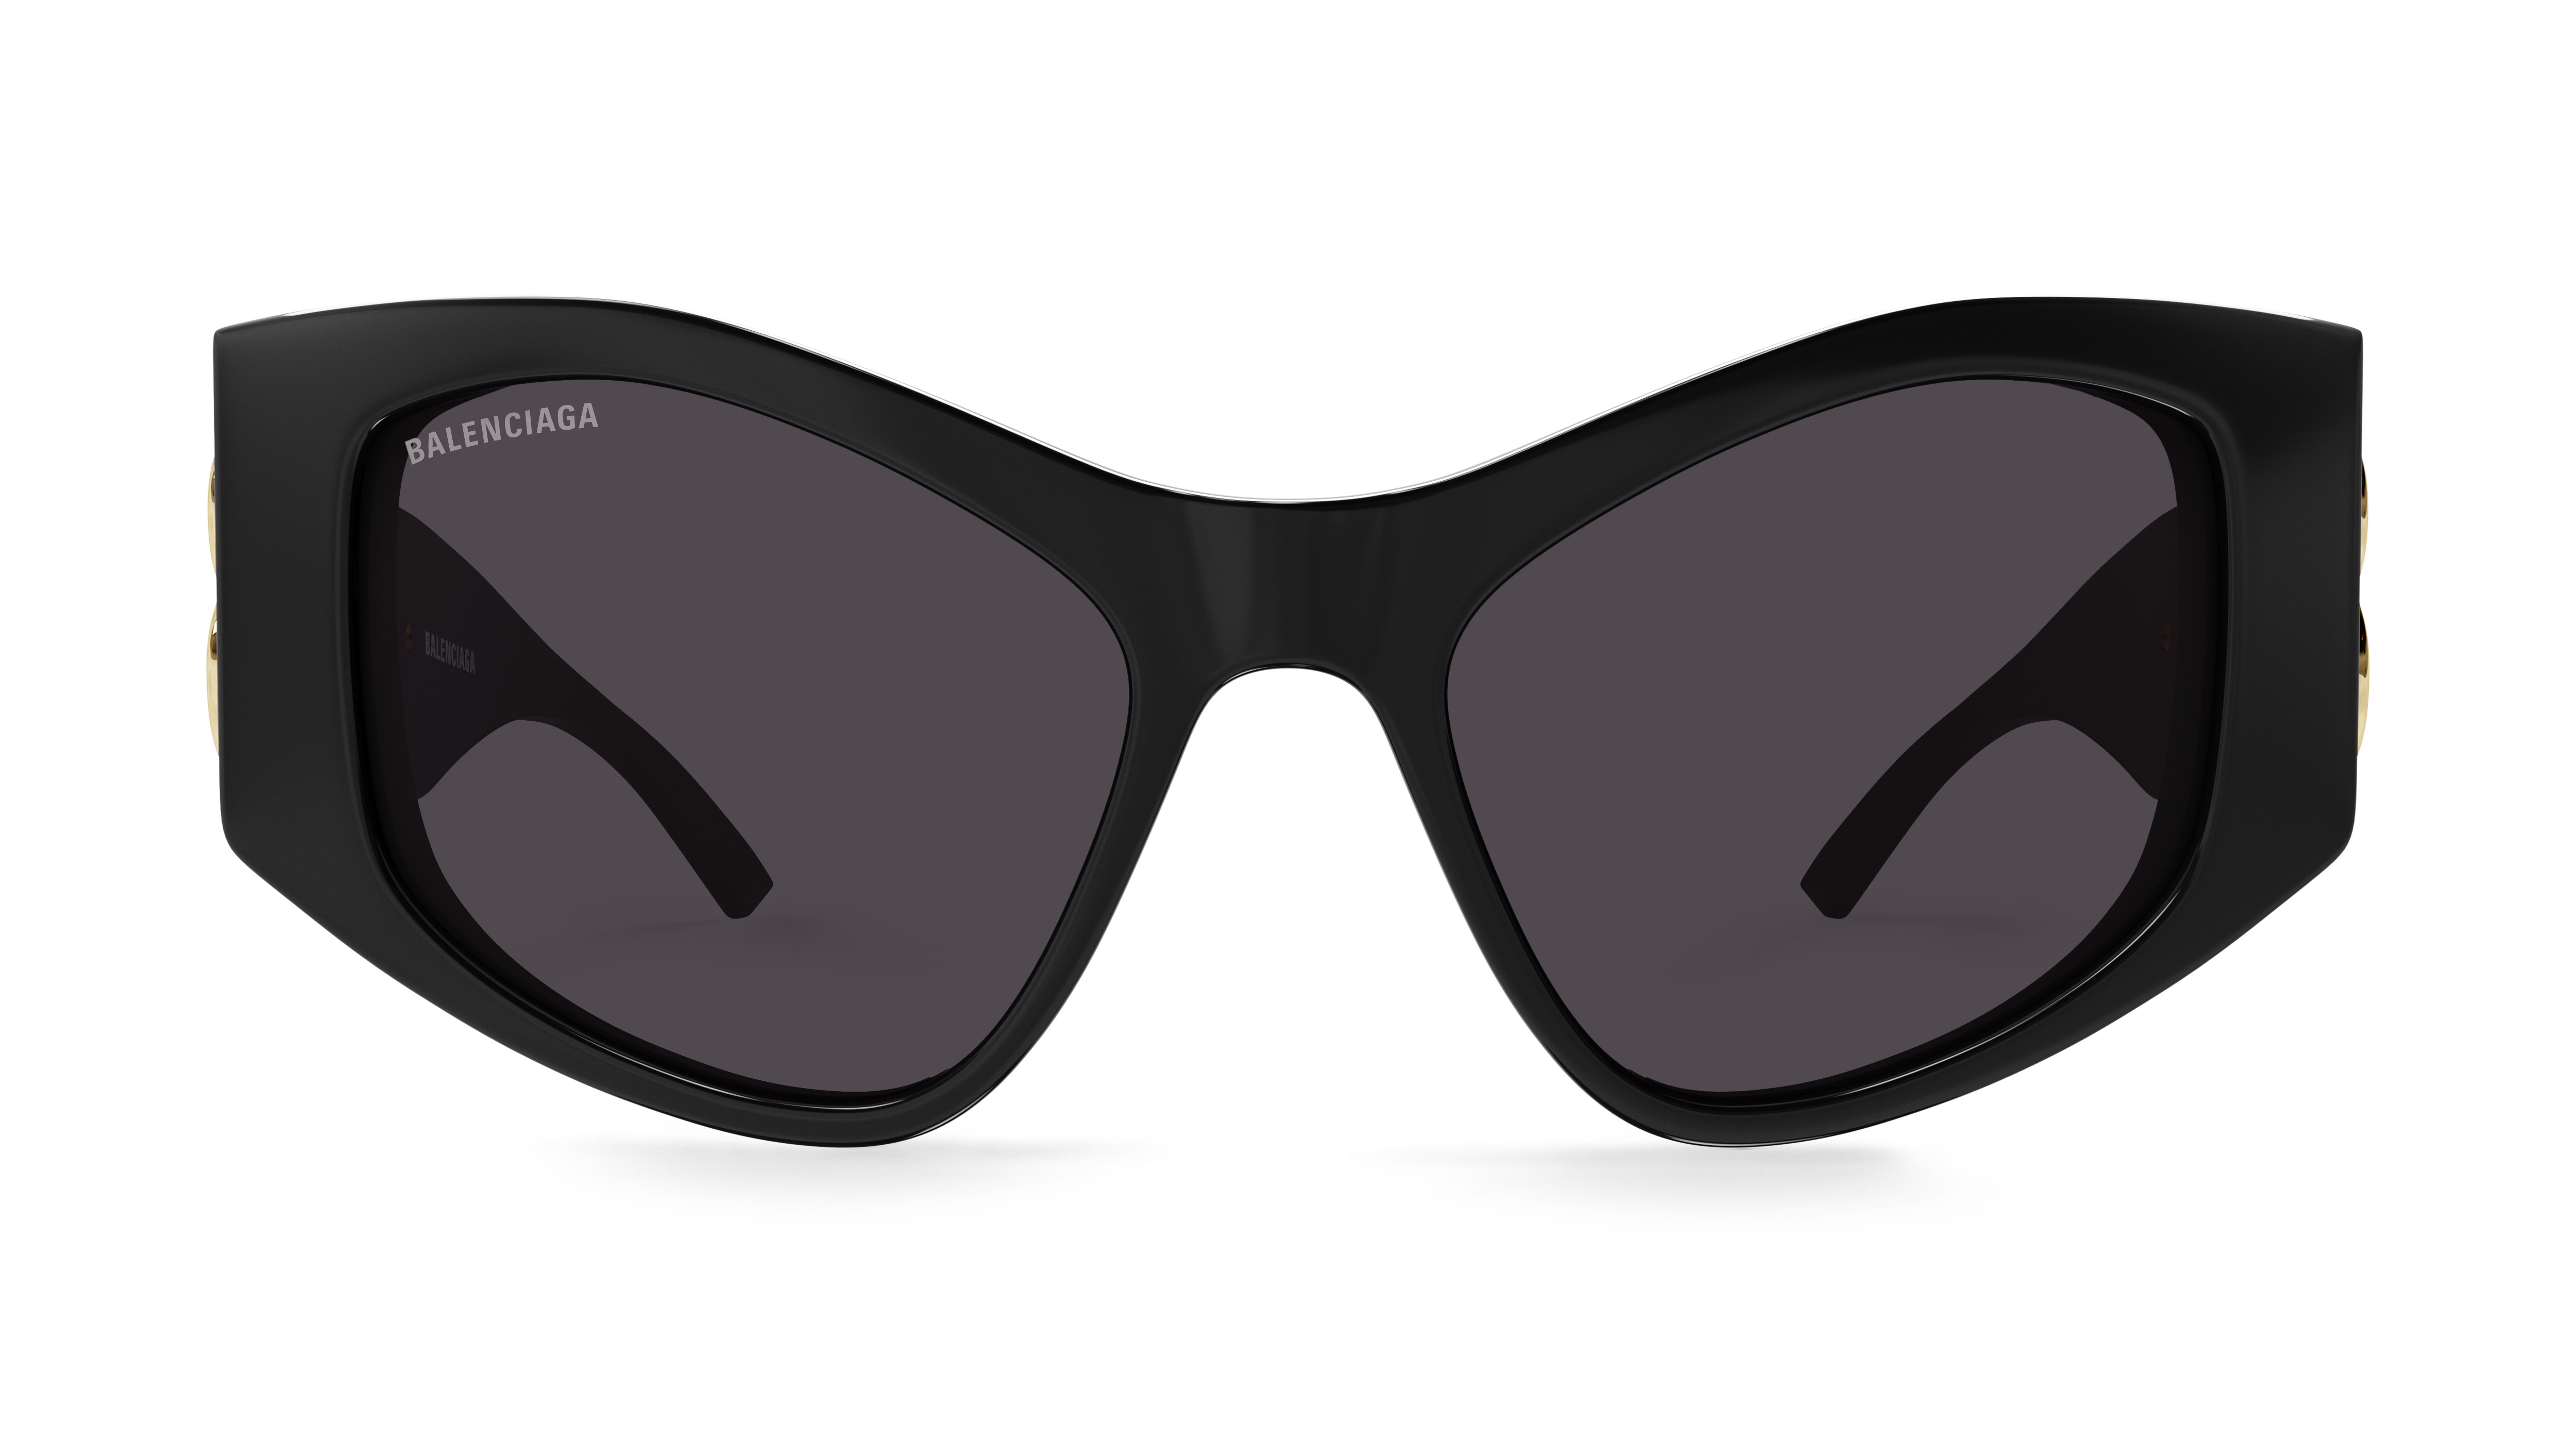 Kering Group Purchases Lindberg Eyewear Brand — The View Eyewear